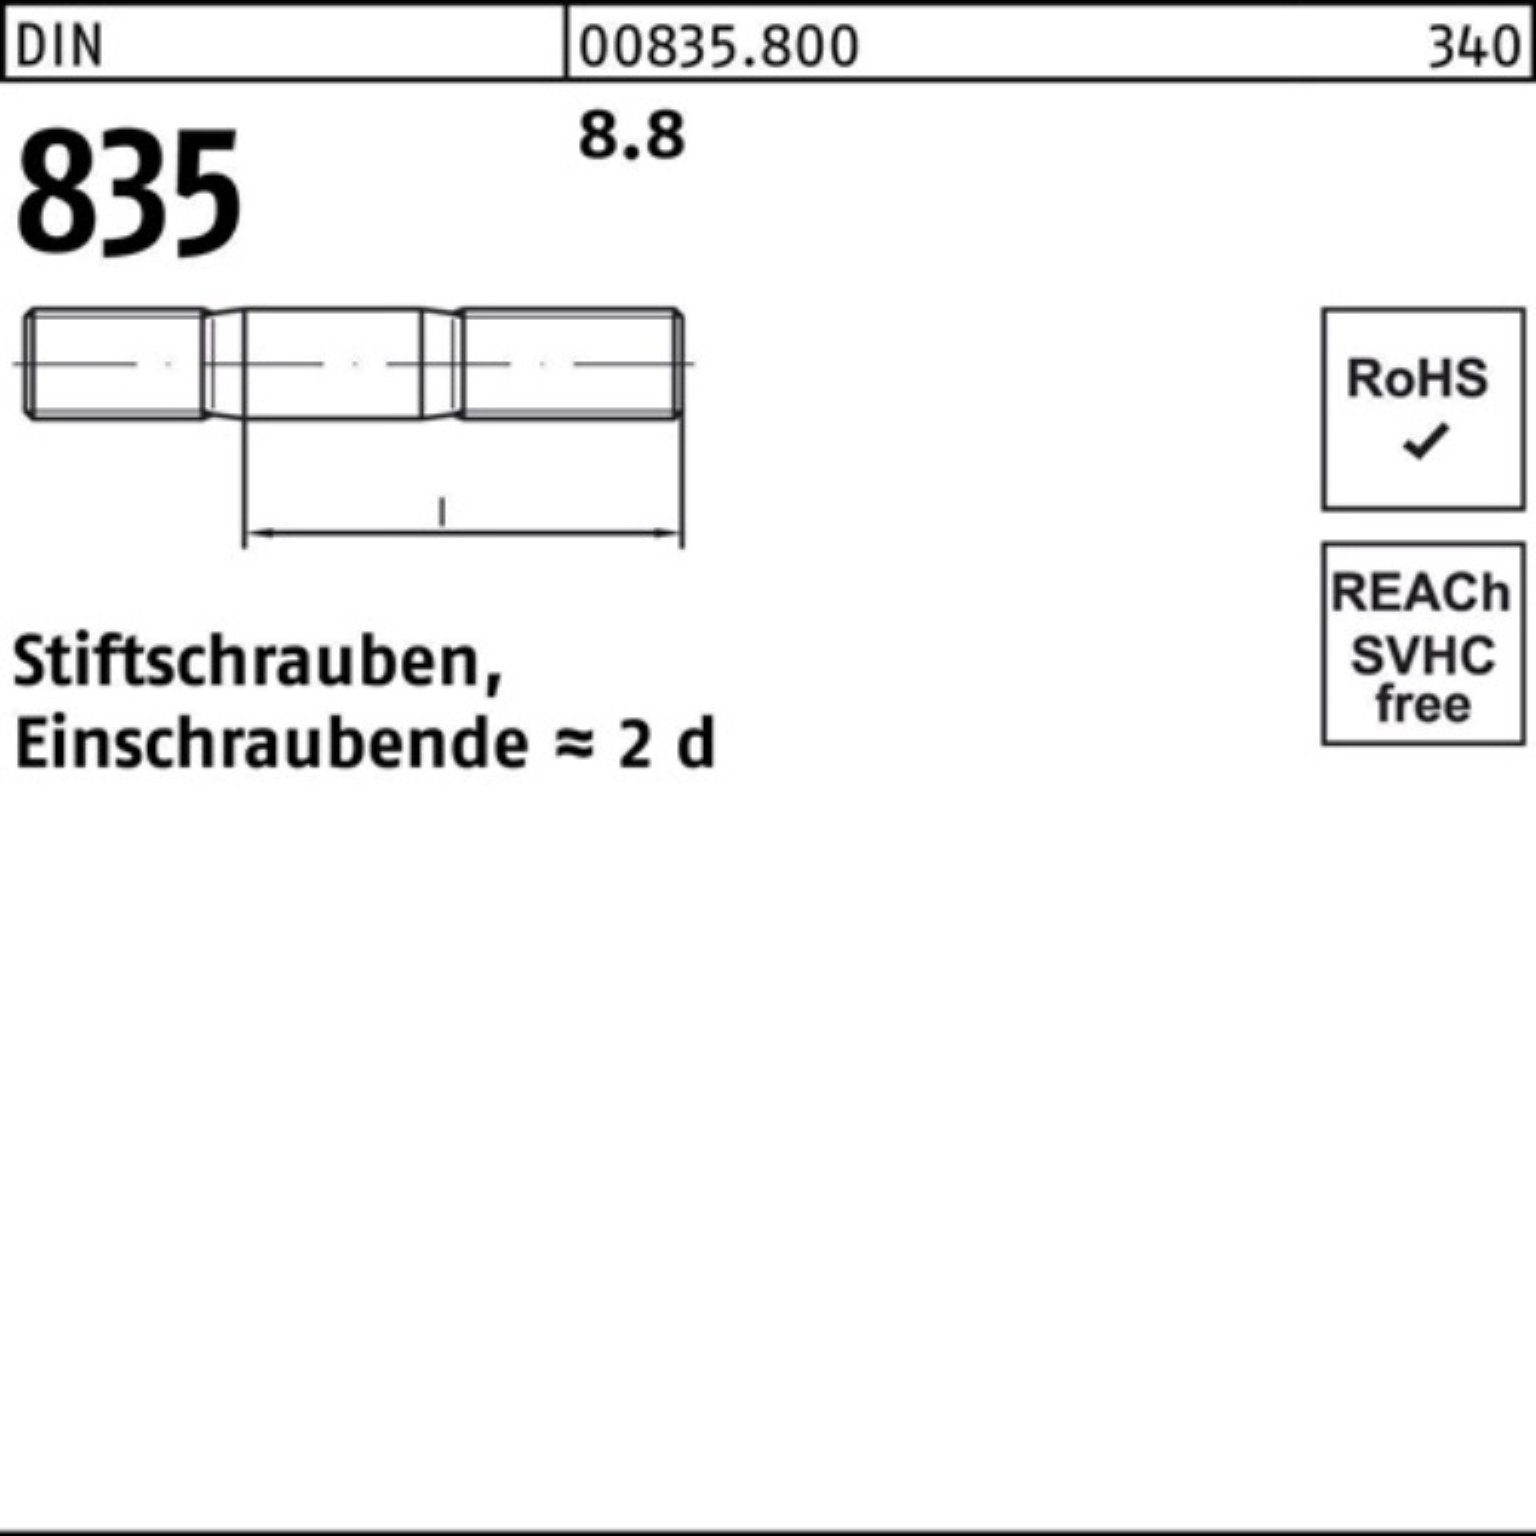 Reyher Stiftschraube 100er 50 DIN Pack 835 Stü Stiftschraube Einschraubende=2d 8.8 60 M10x